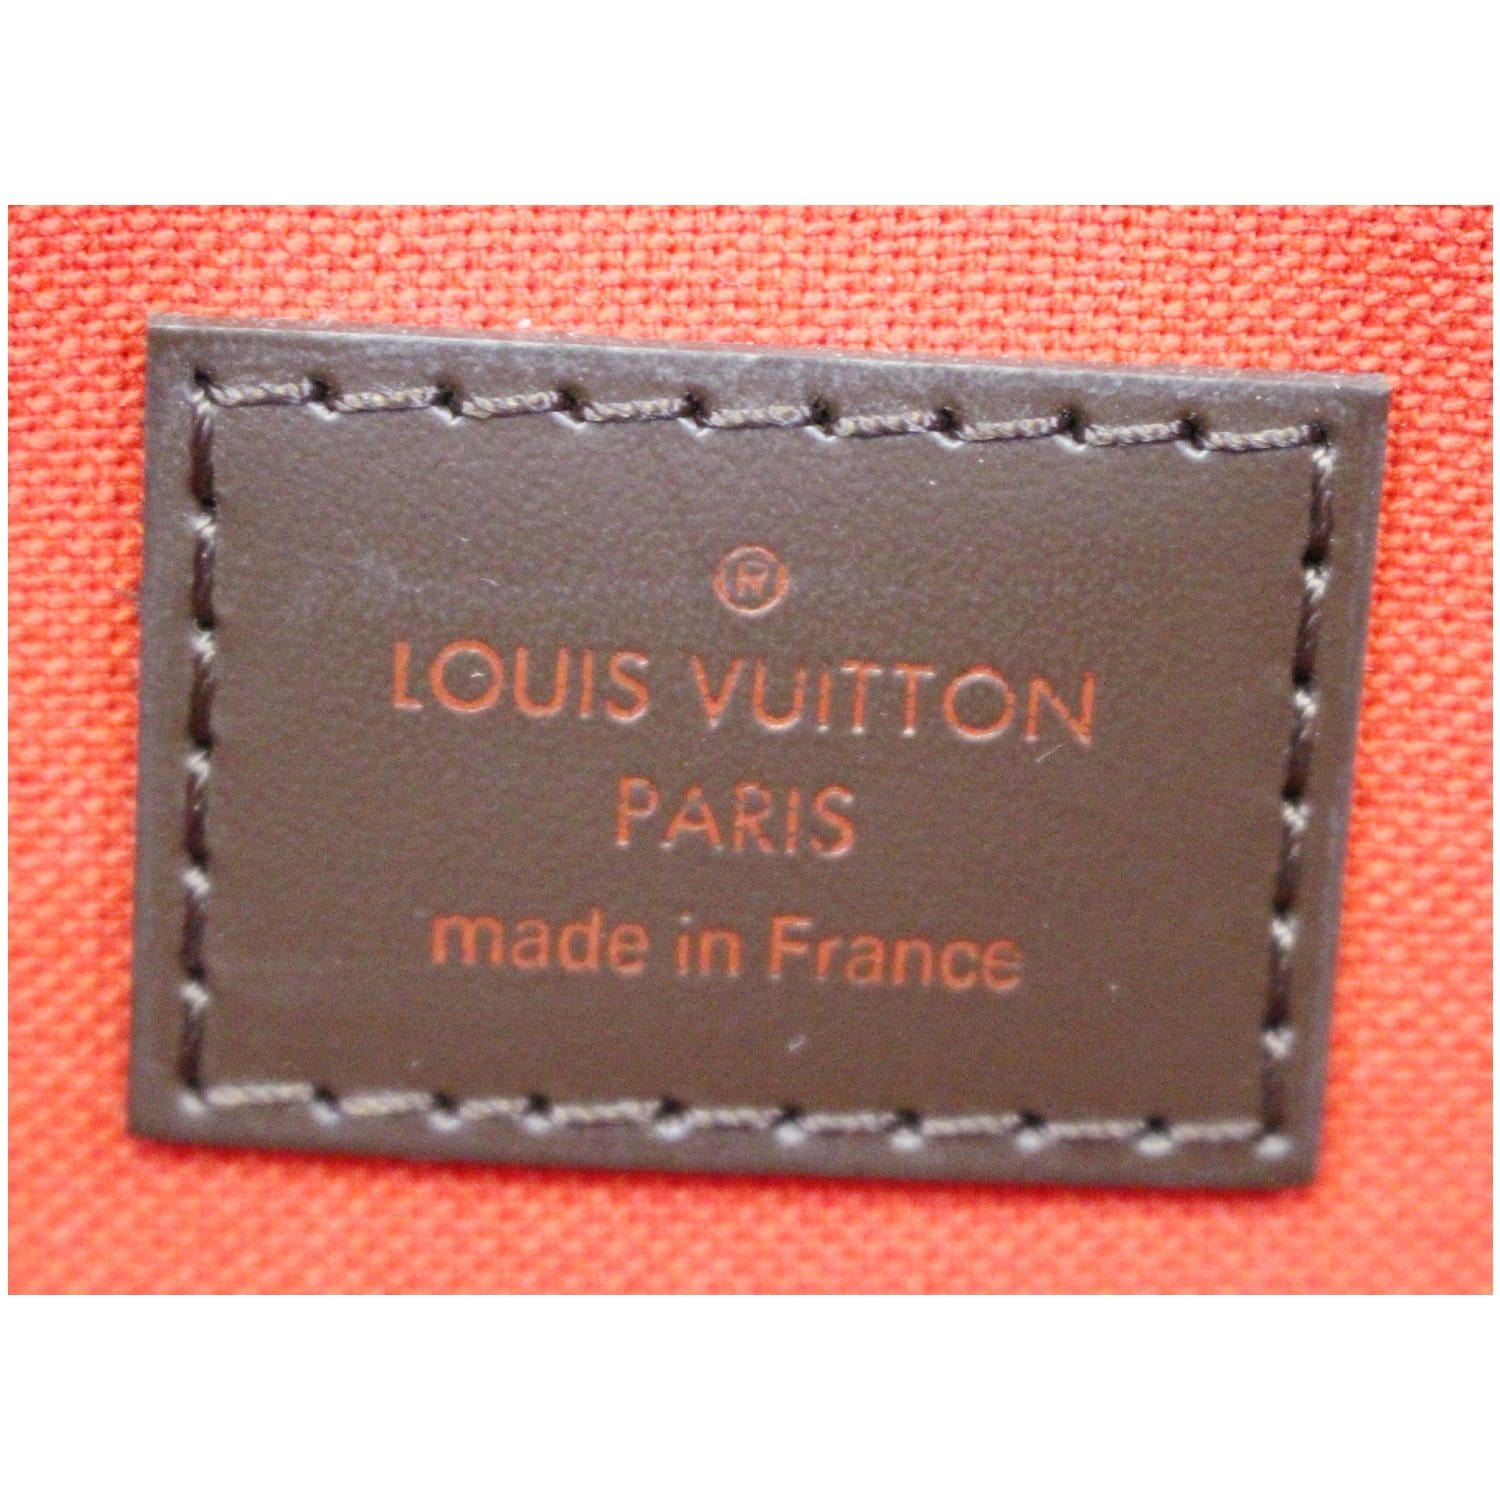 Preloved Louis Vuitton Damier Ebene Favorite MM FL4106 080723 – KimmieBBags  LLC